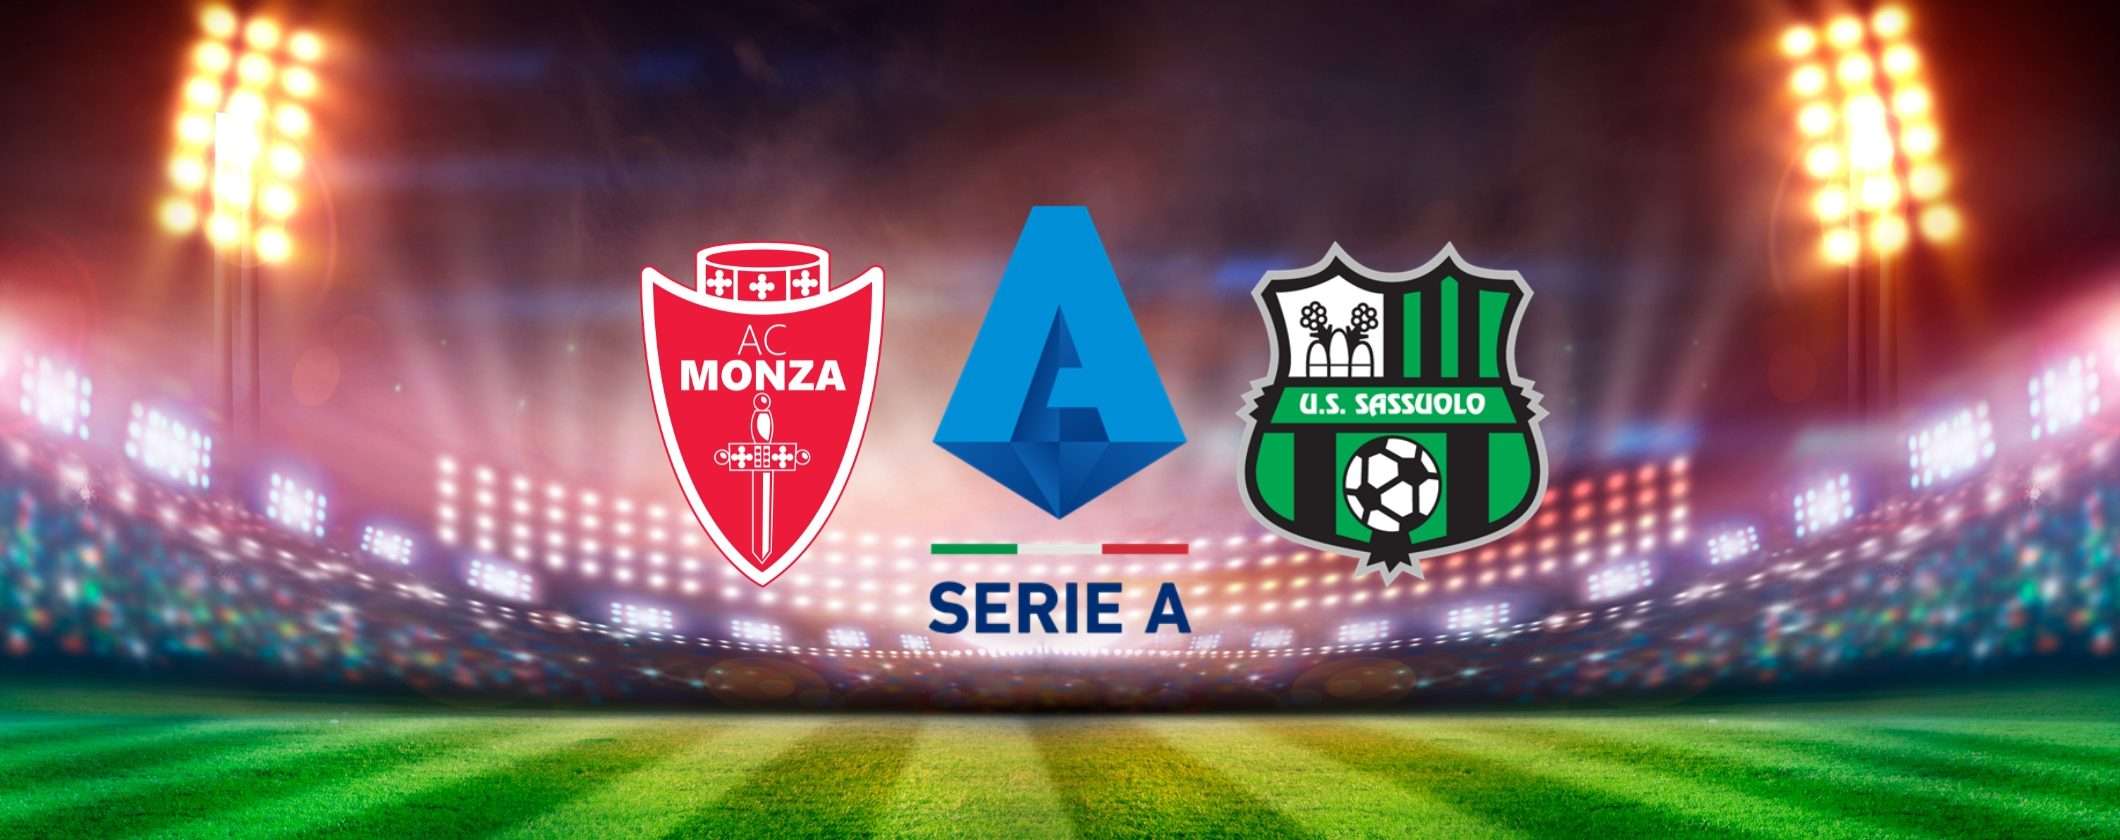 Monza-Sassuolo: guarda la partita in streaming dall'estero